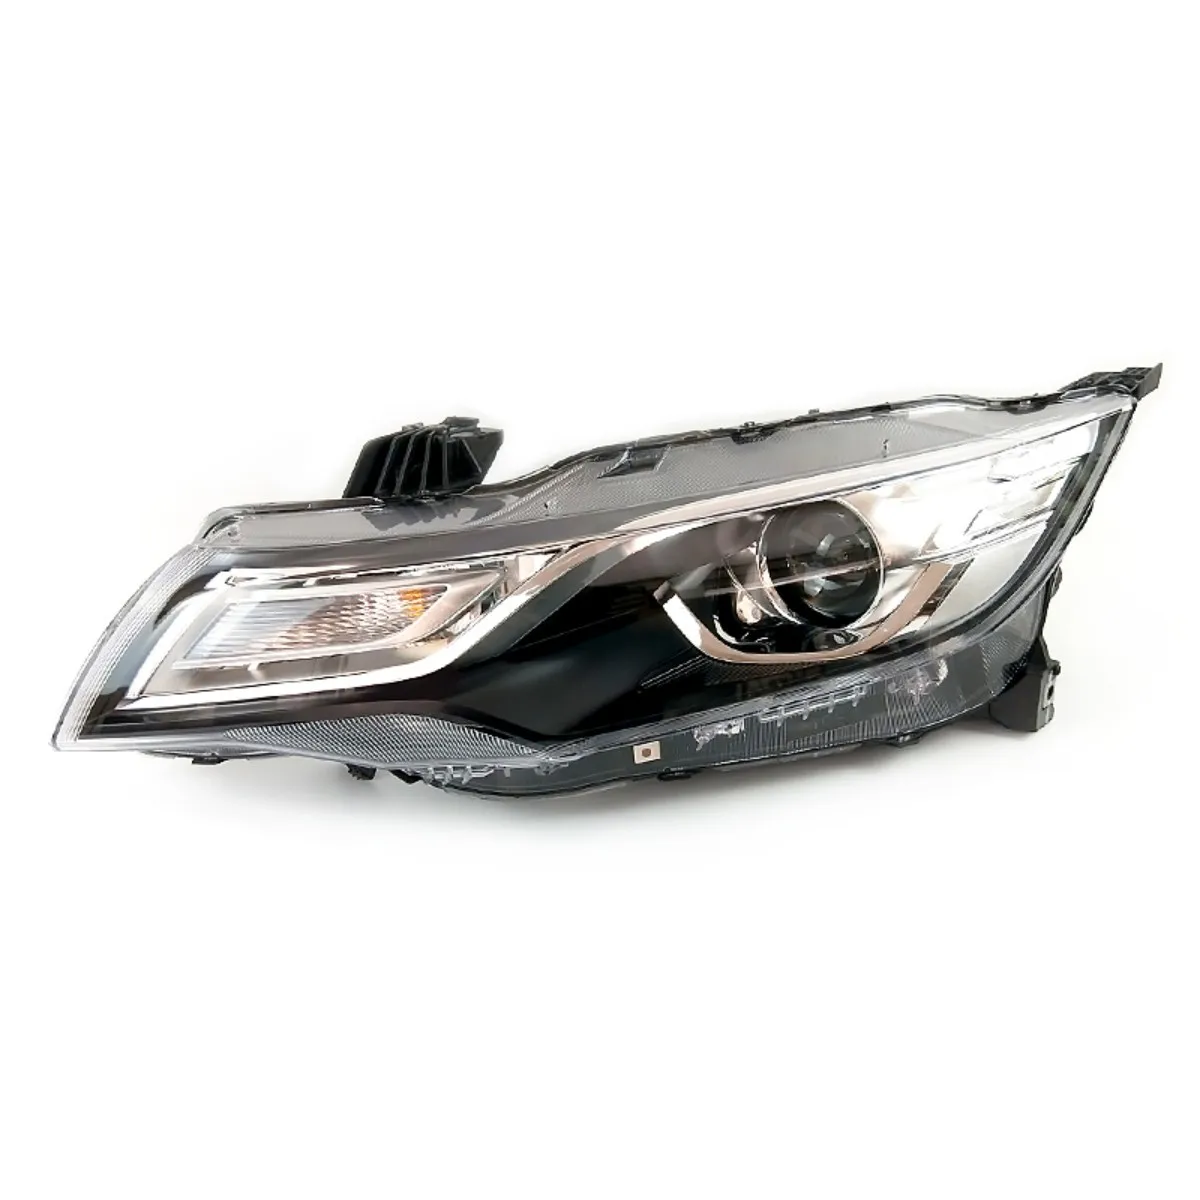 

Автомобильная фара головного света для Geely Emgrand 18-20, Ближний и Дальний свет, светодиодный дневной ходовой сигнал поворота DRL